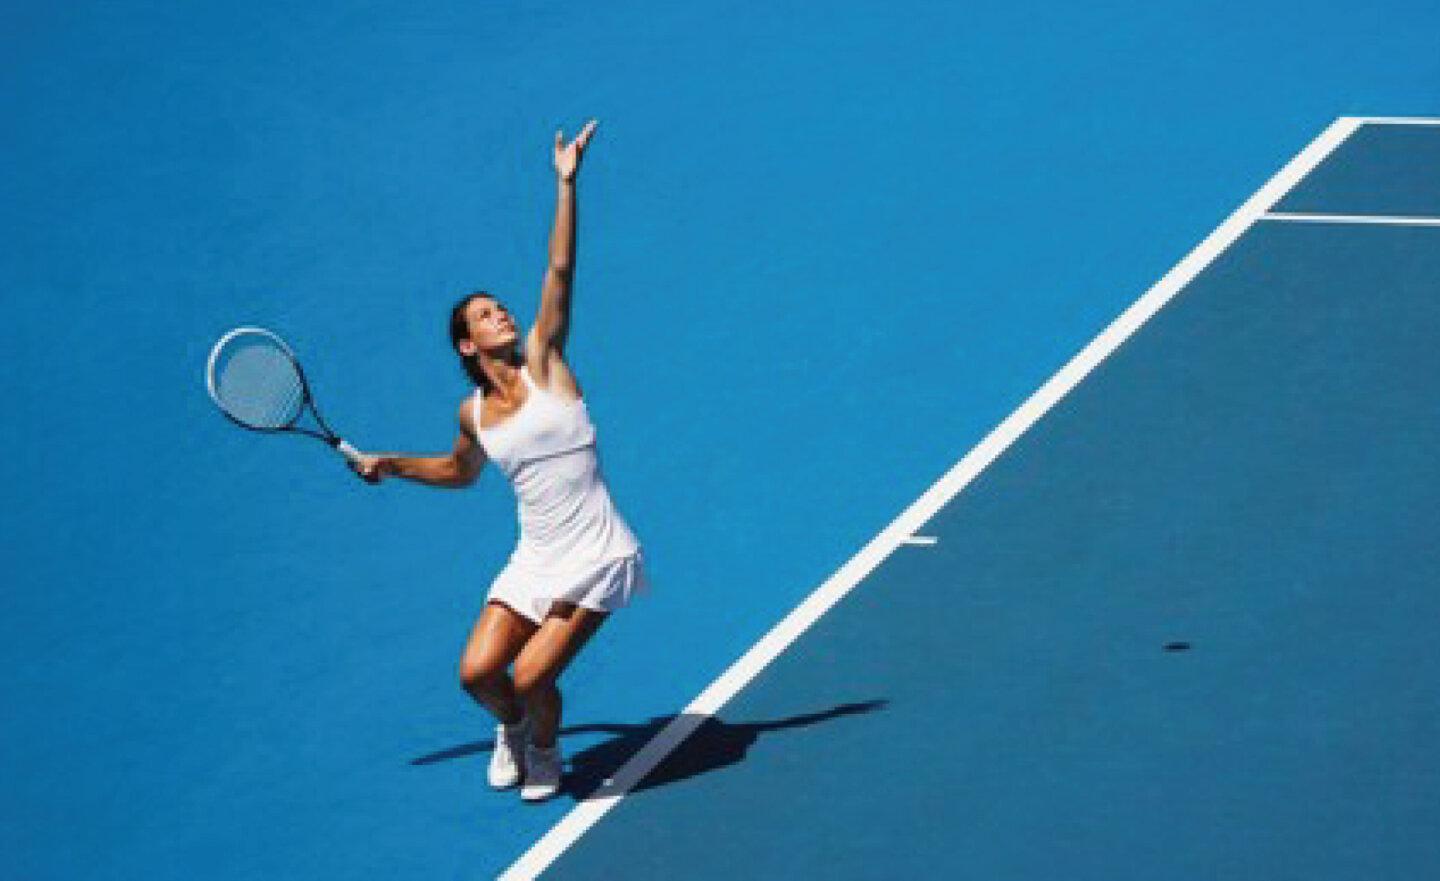 生成式 AI 加入 2023 美國網球公開賽，IBM 用它打造球評解說與勝負分析